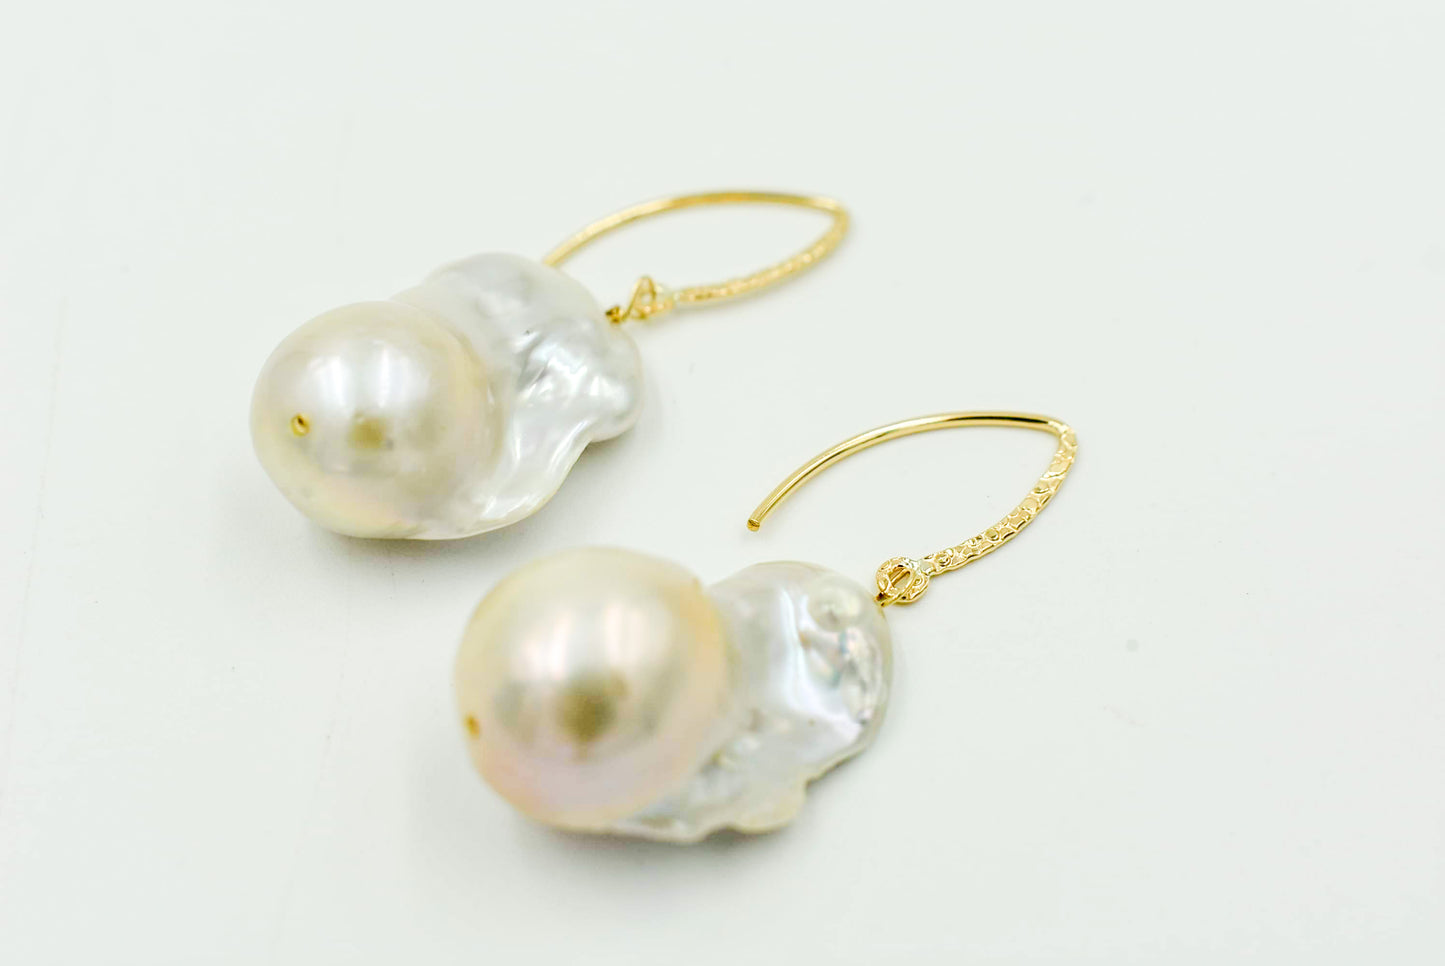 Simple Baroque Pearl Earrings